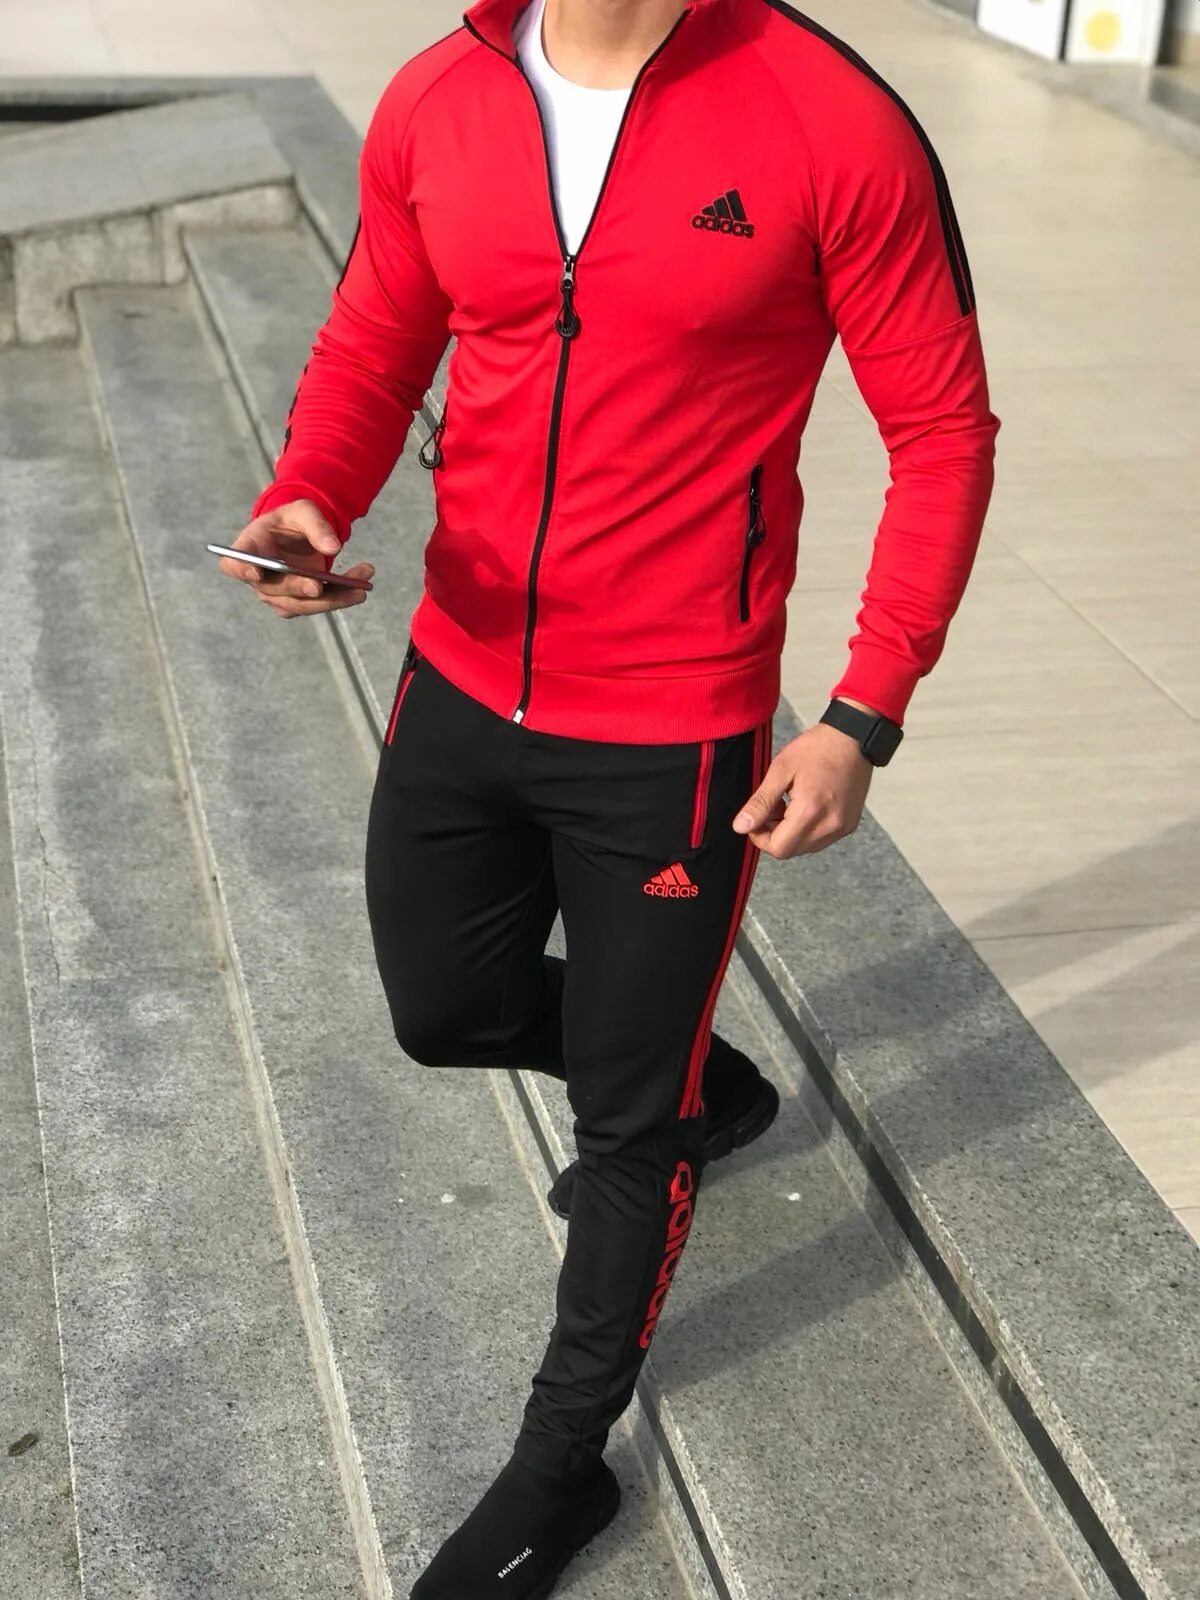 Спортивный костюм классика. Спортивный костюм адидас мужской красный. Adidas костюм мужской 2021. Красный костюм адидас мужской. Мужской спортивный костюм adidas 2021.